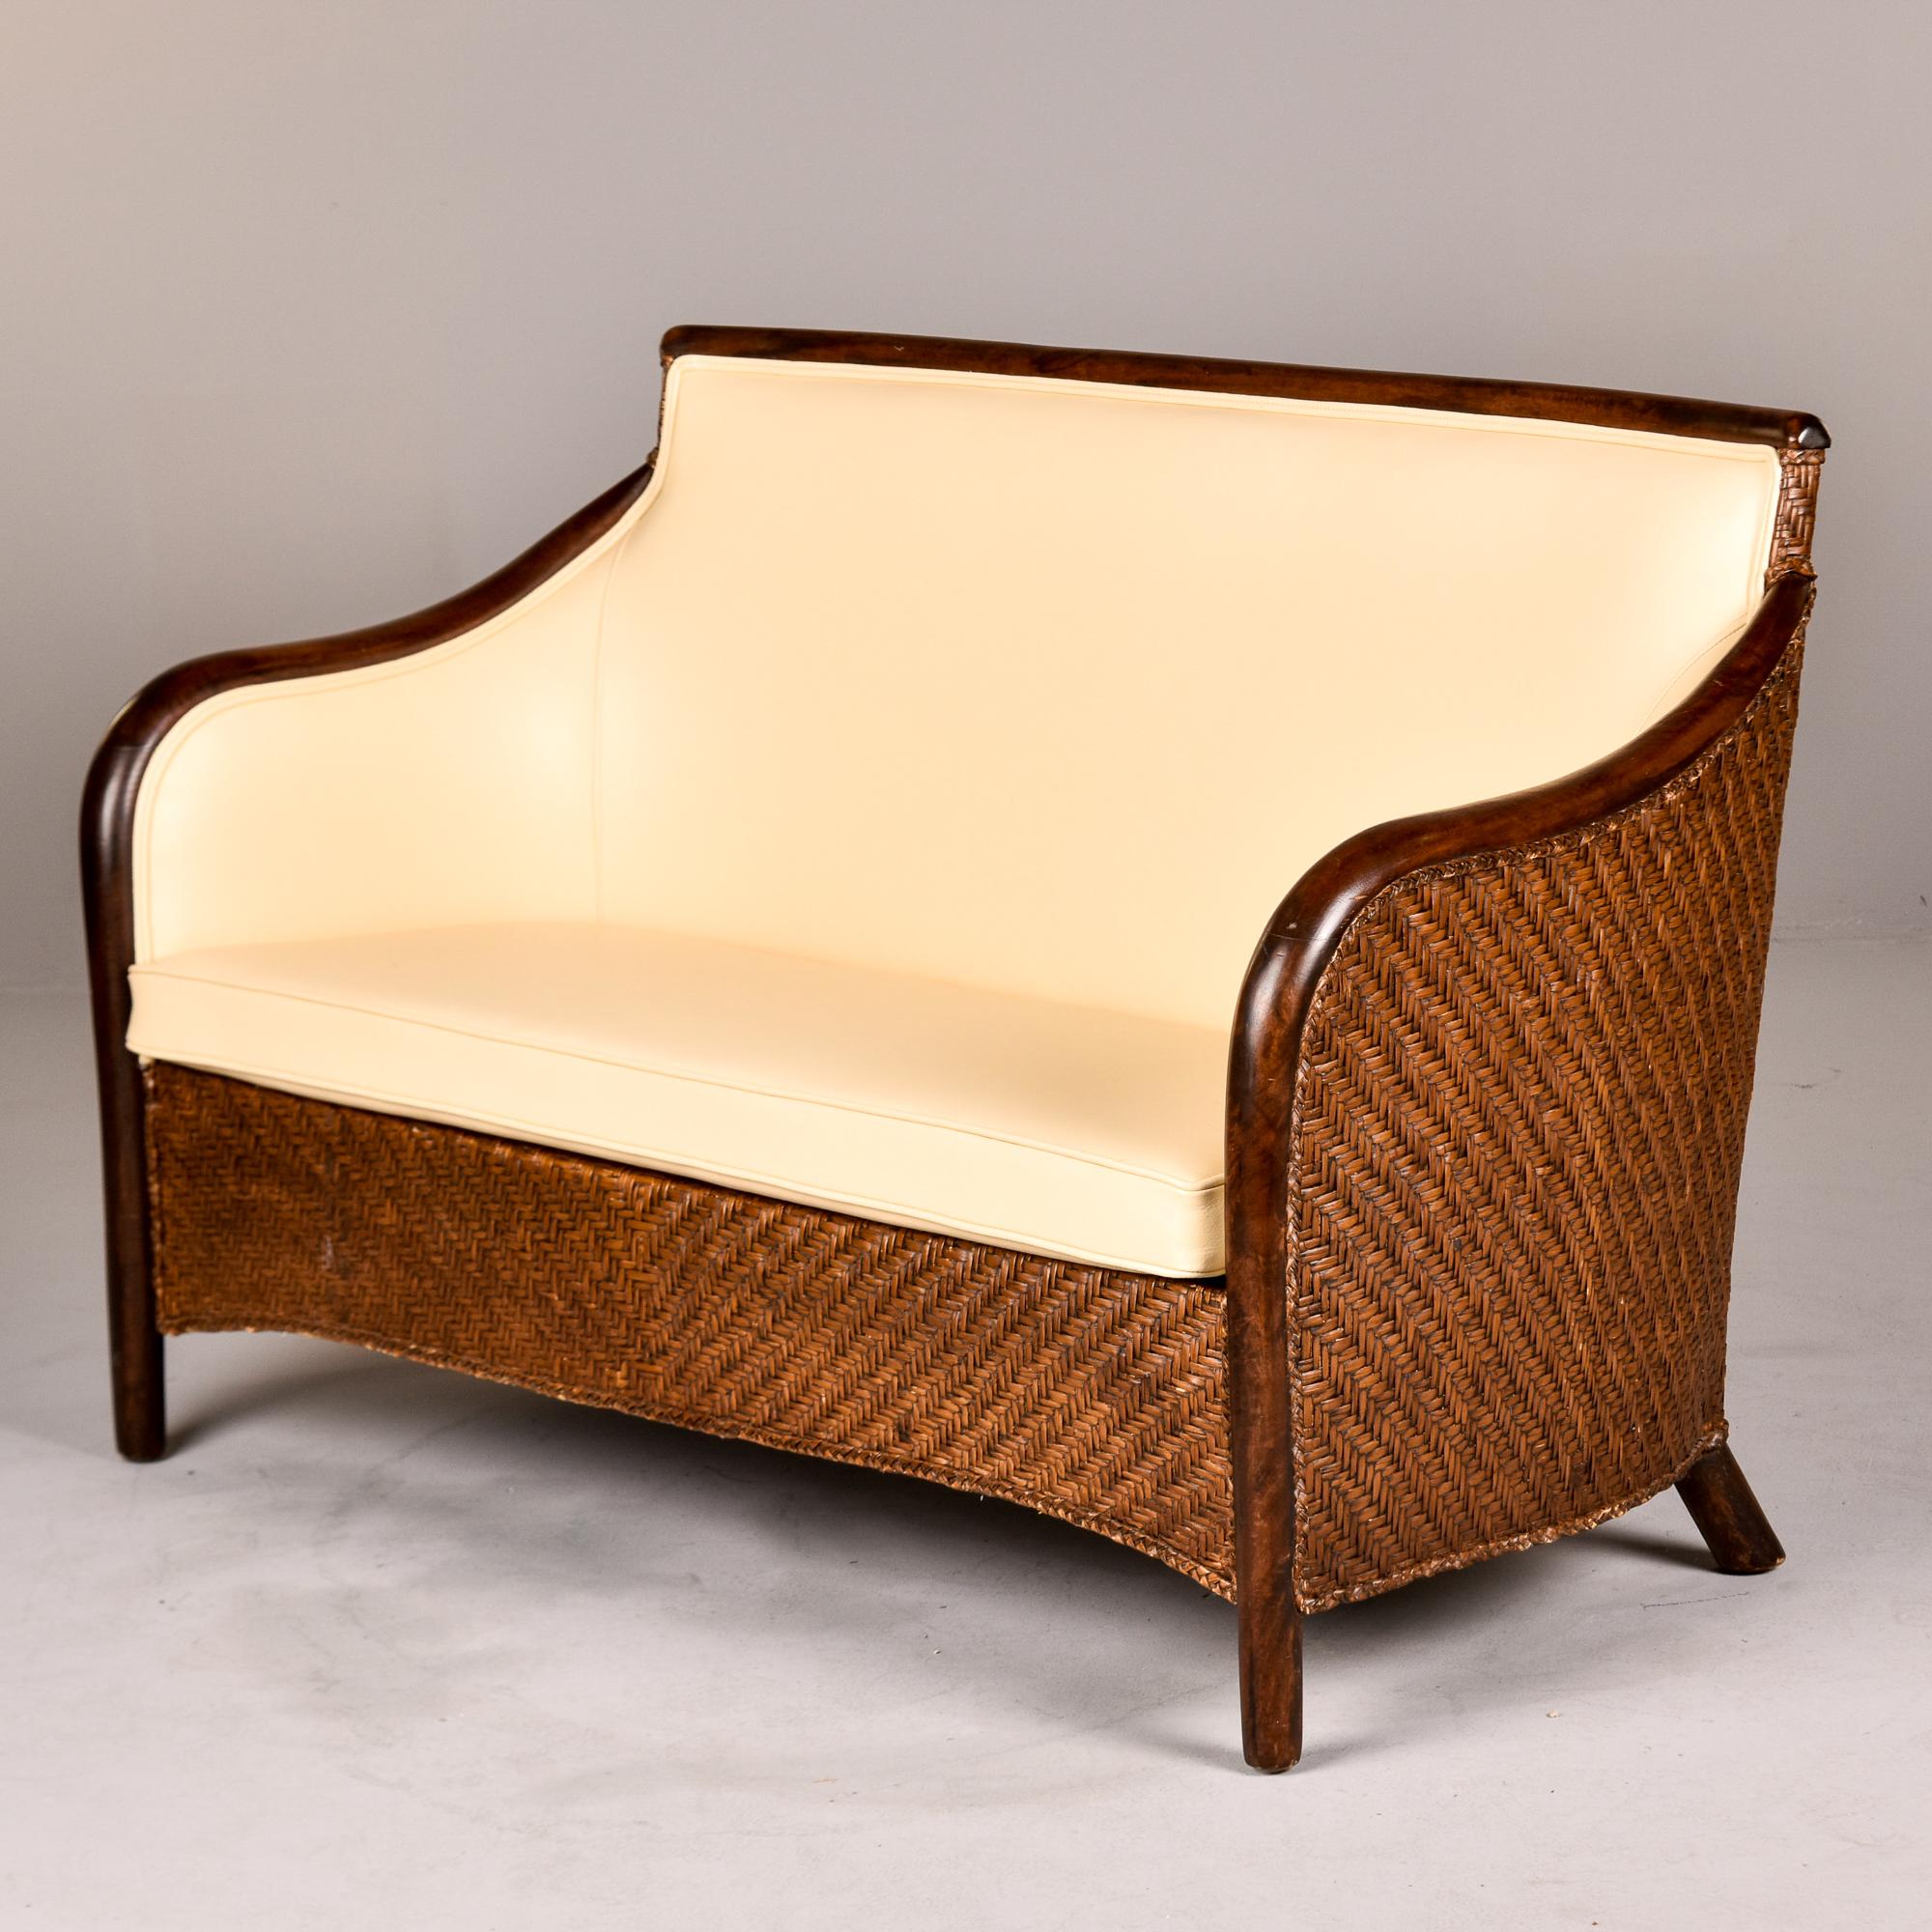 Trouvé en Italie, ce canapé en osier et en bois courbé date des années 1940. Nous l'avons fait retapisser dans un cuir crème de couleur ivoire. Fabricant inconnu. Paire de chaises coordonnées dans le même style / tapisserie disponible au moment de